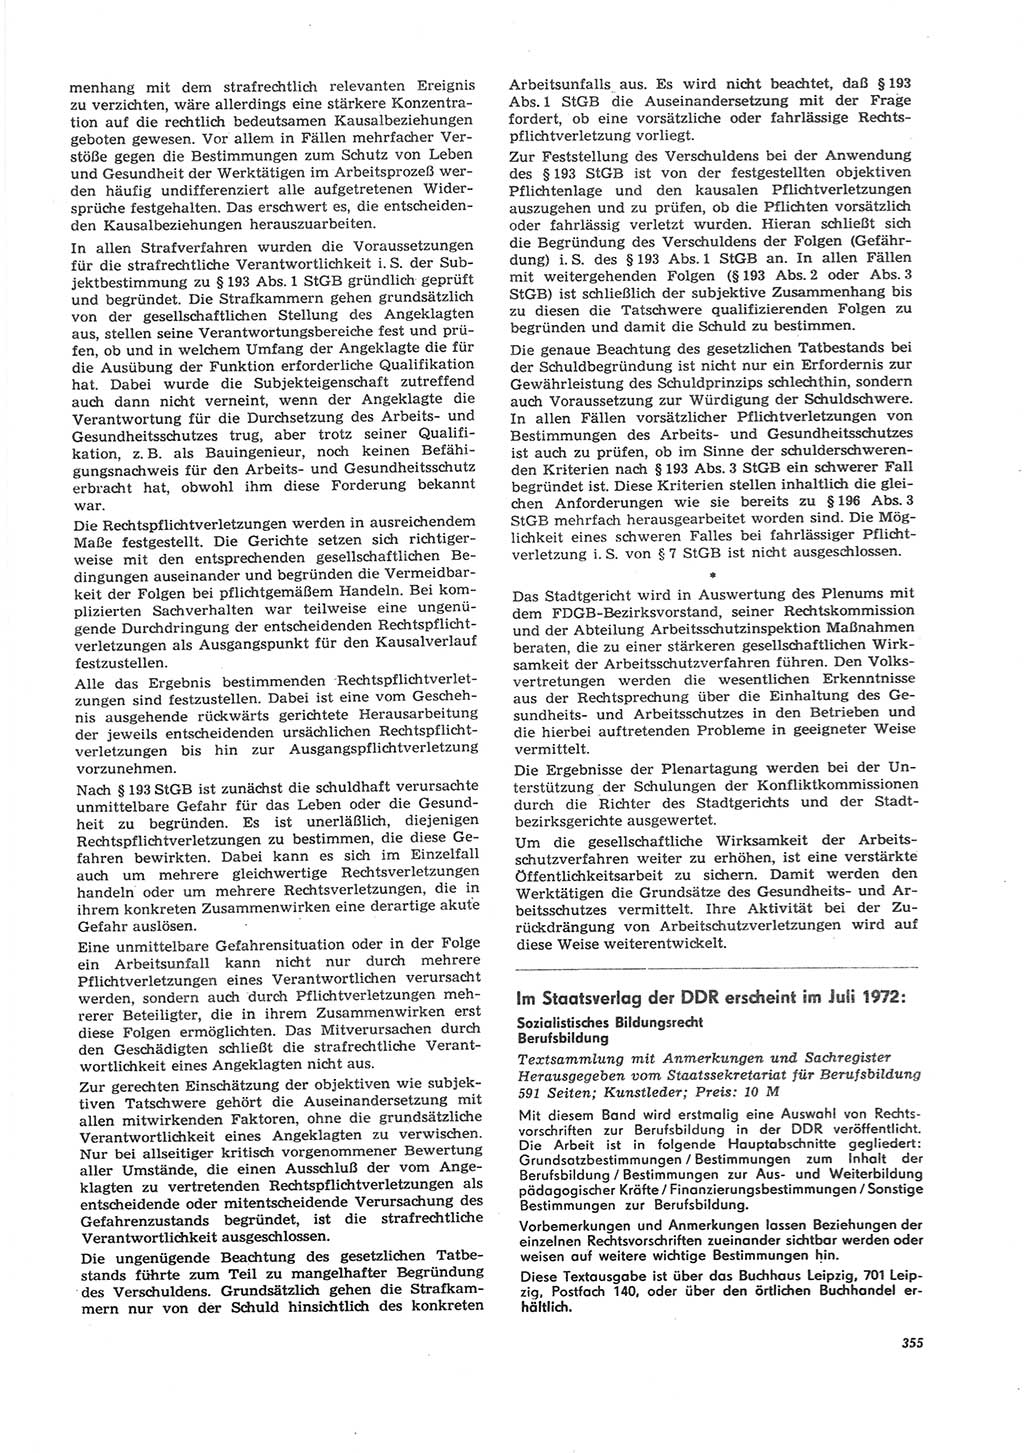 Neue Justiz (NJ), Zeitschrift für Recht und Rechtswissenschaft [Deutsche Demokratische Republik (DDR)], 26. Jahrgang 1972, Seite 355 (NJ DDR 1972, S. 355)